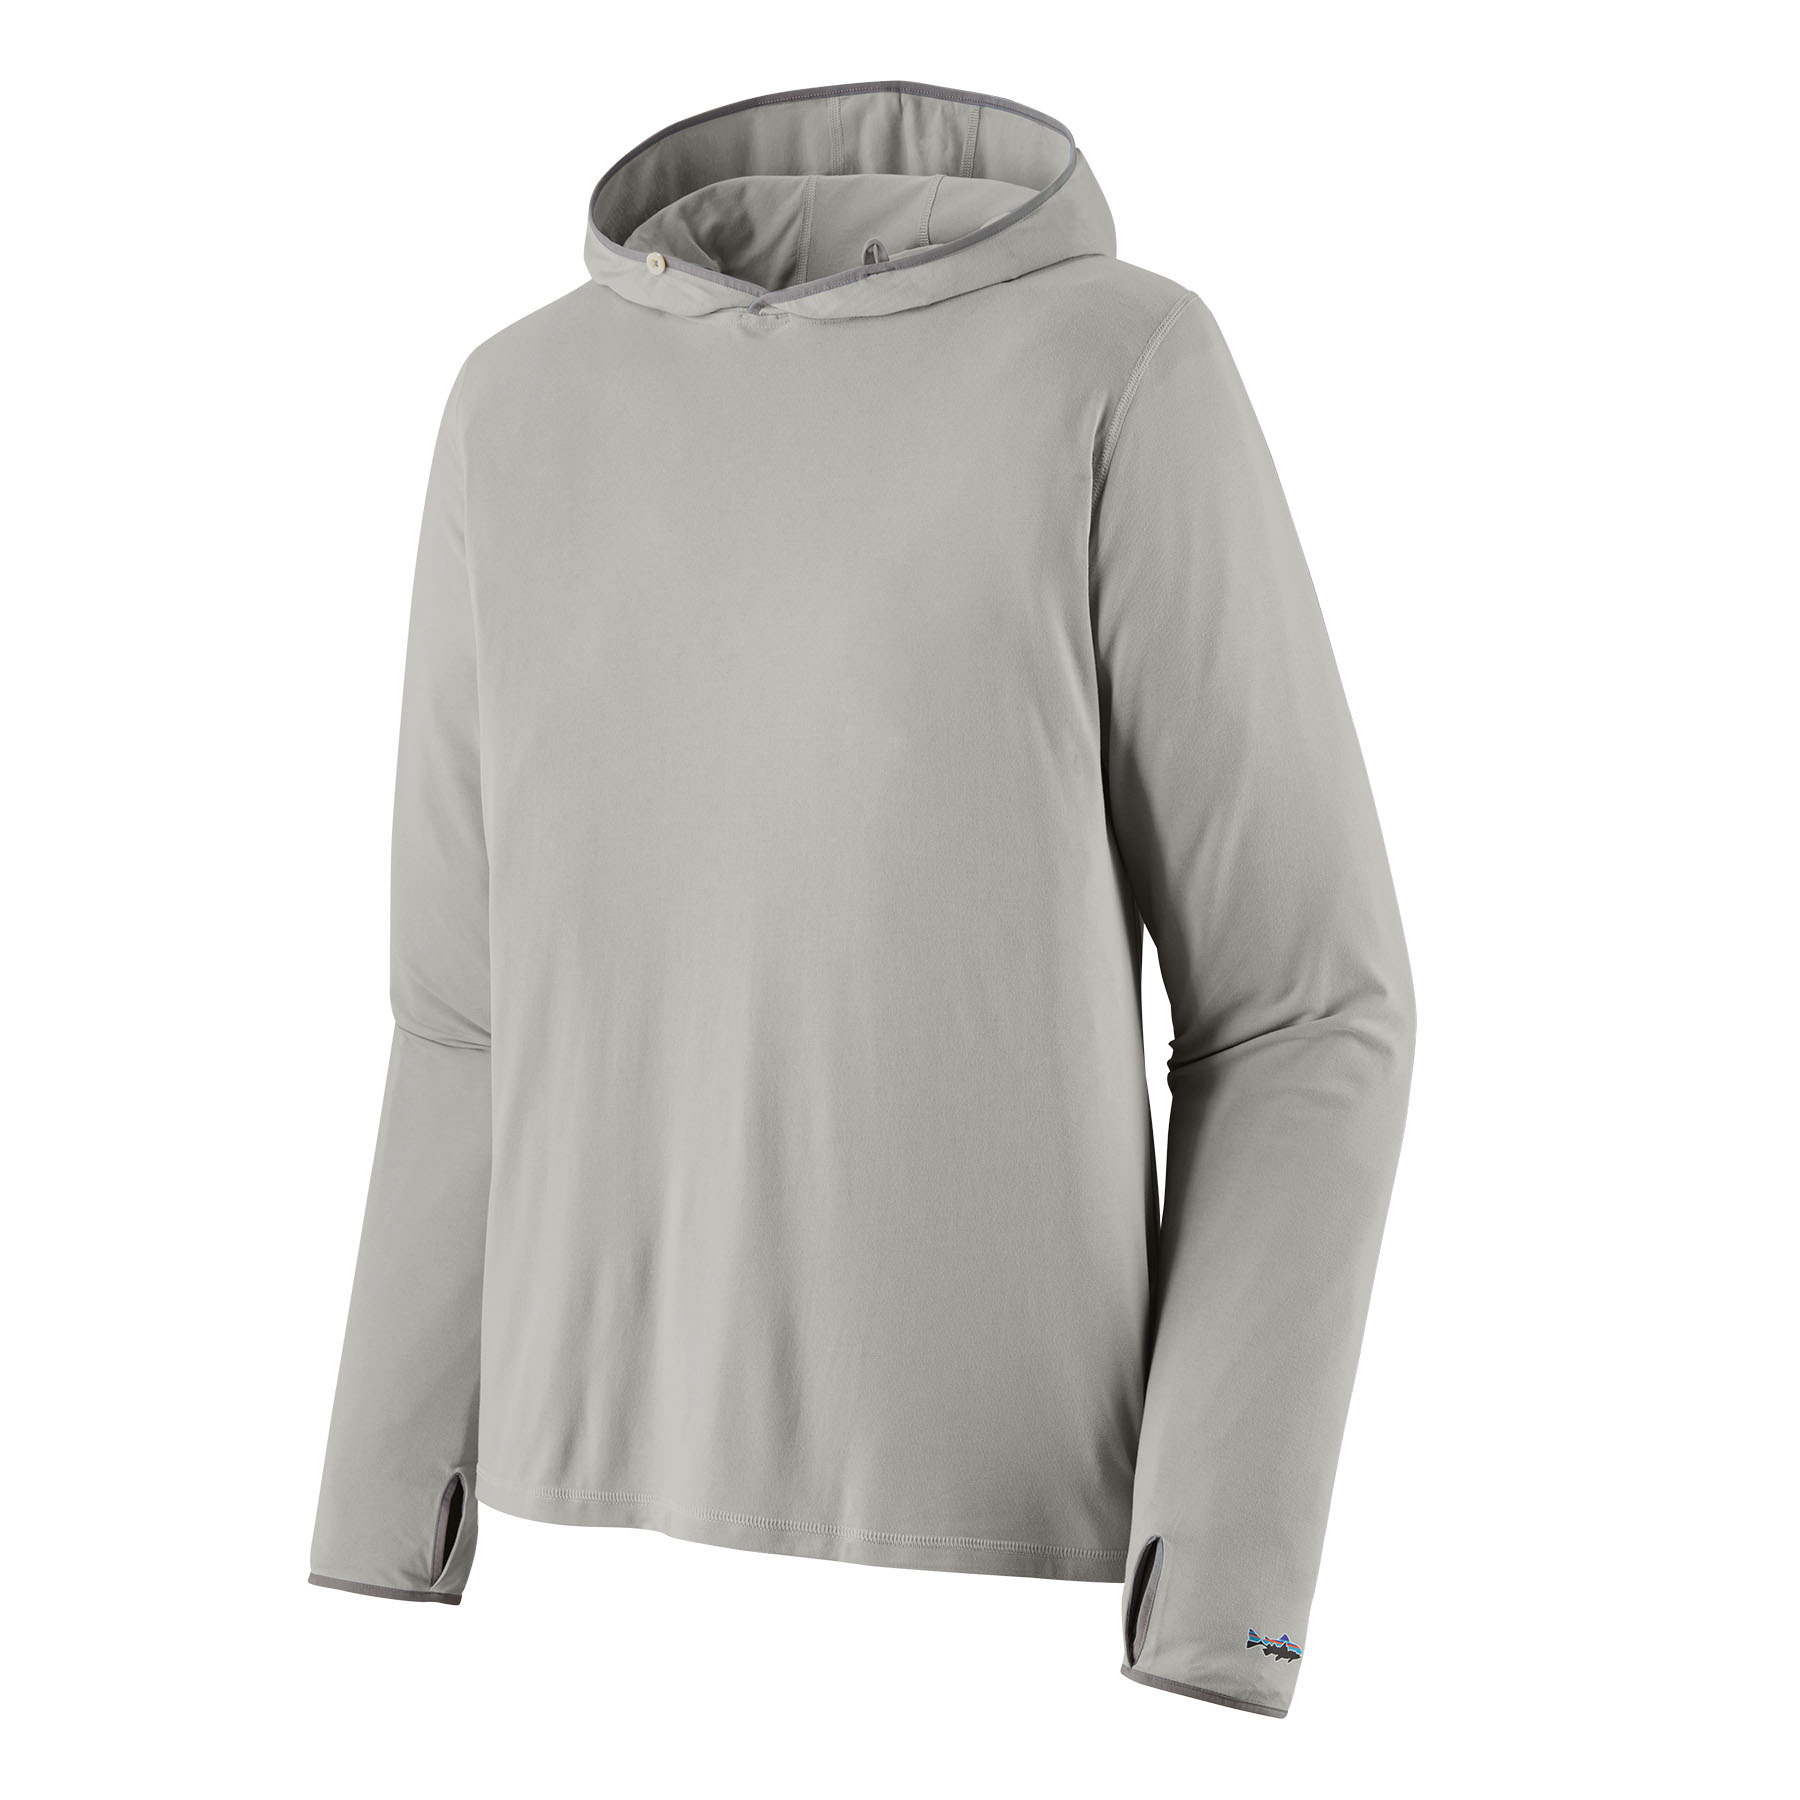 Tropic Comfort Natural Hoody (tailored grey)